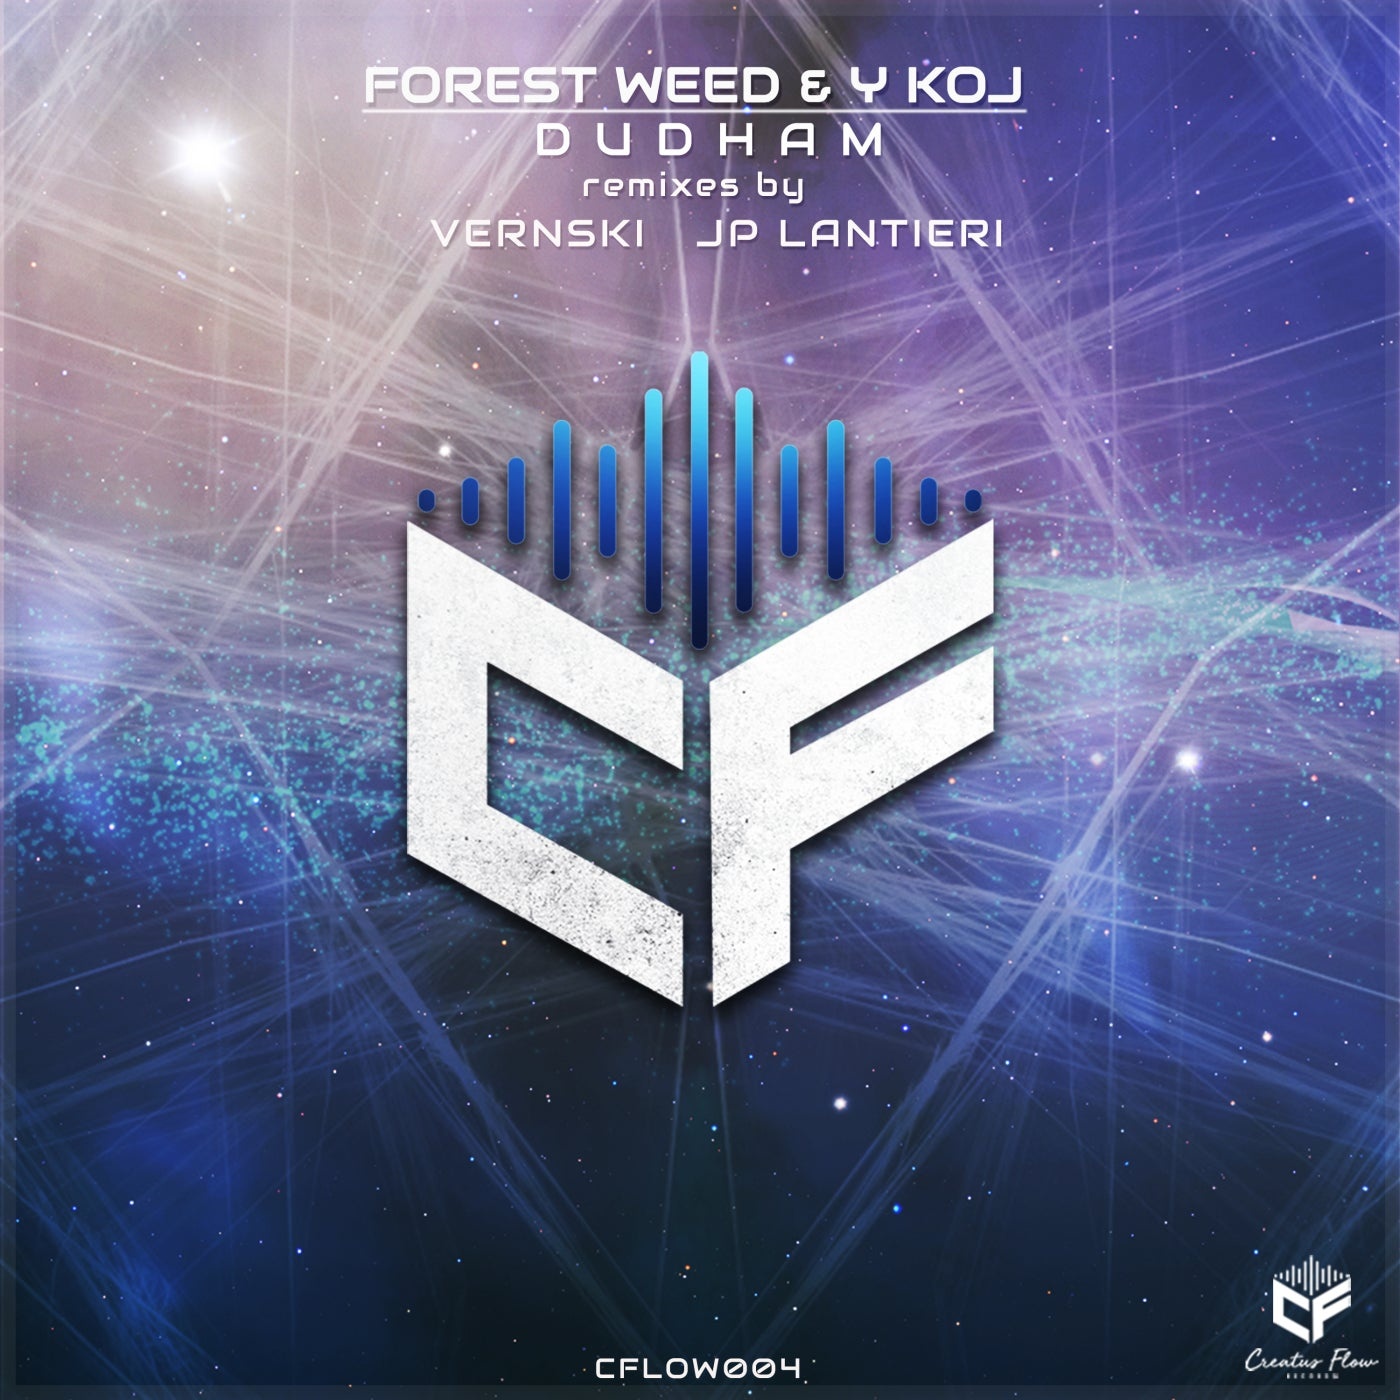 Forest Weed, Y KOJ - Dudham [CFLOW004]